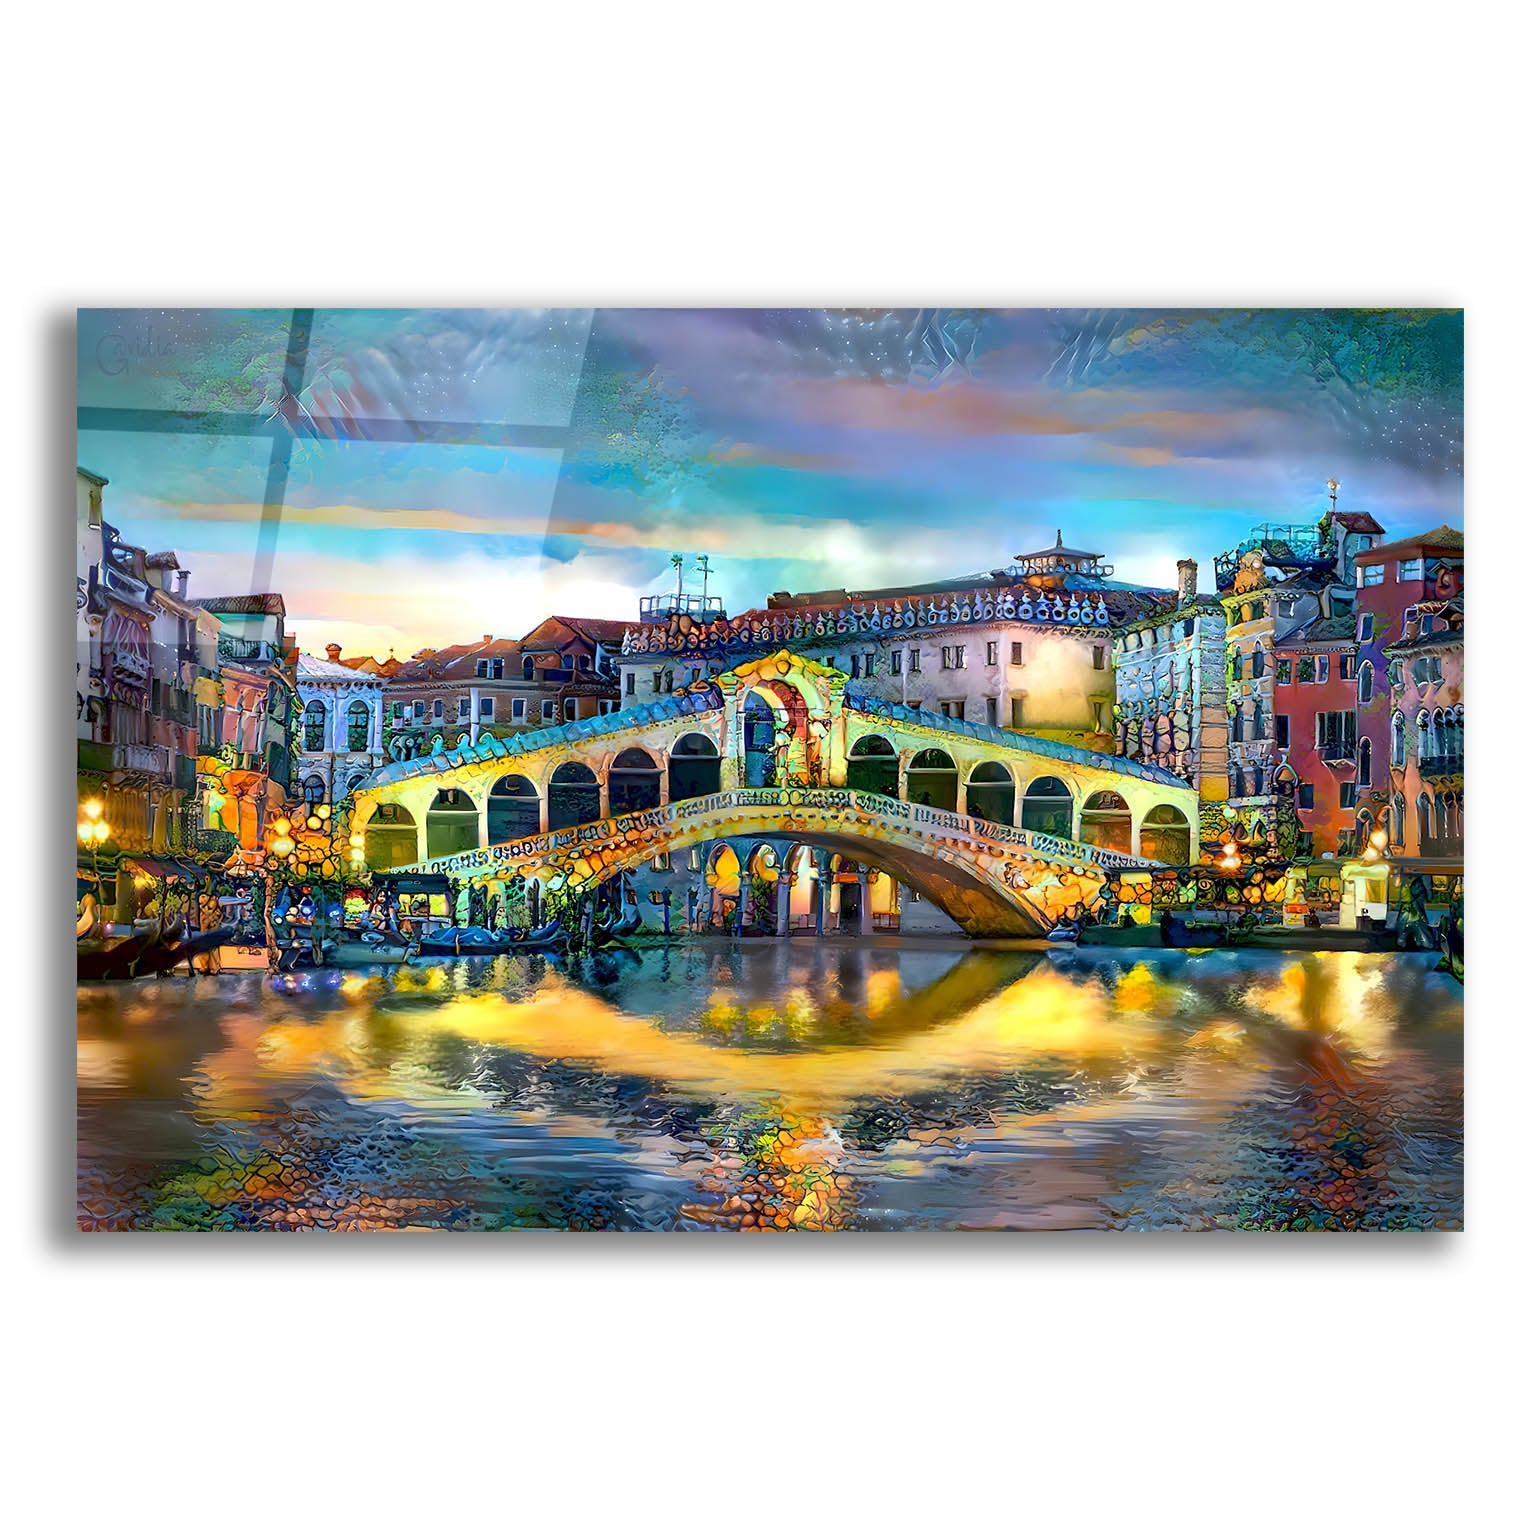 Epic Art 'Venice Italy Rialto Bridge at night' by Pedro Gavidia, Acrylic Glass Wall Art,24x16